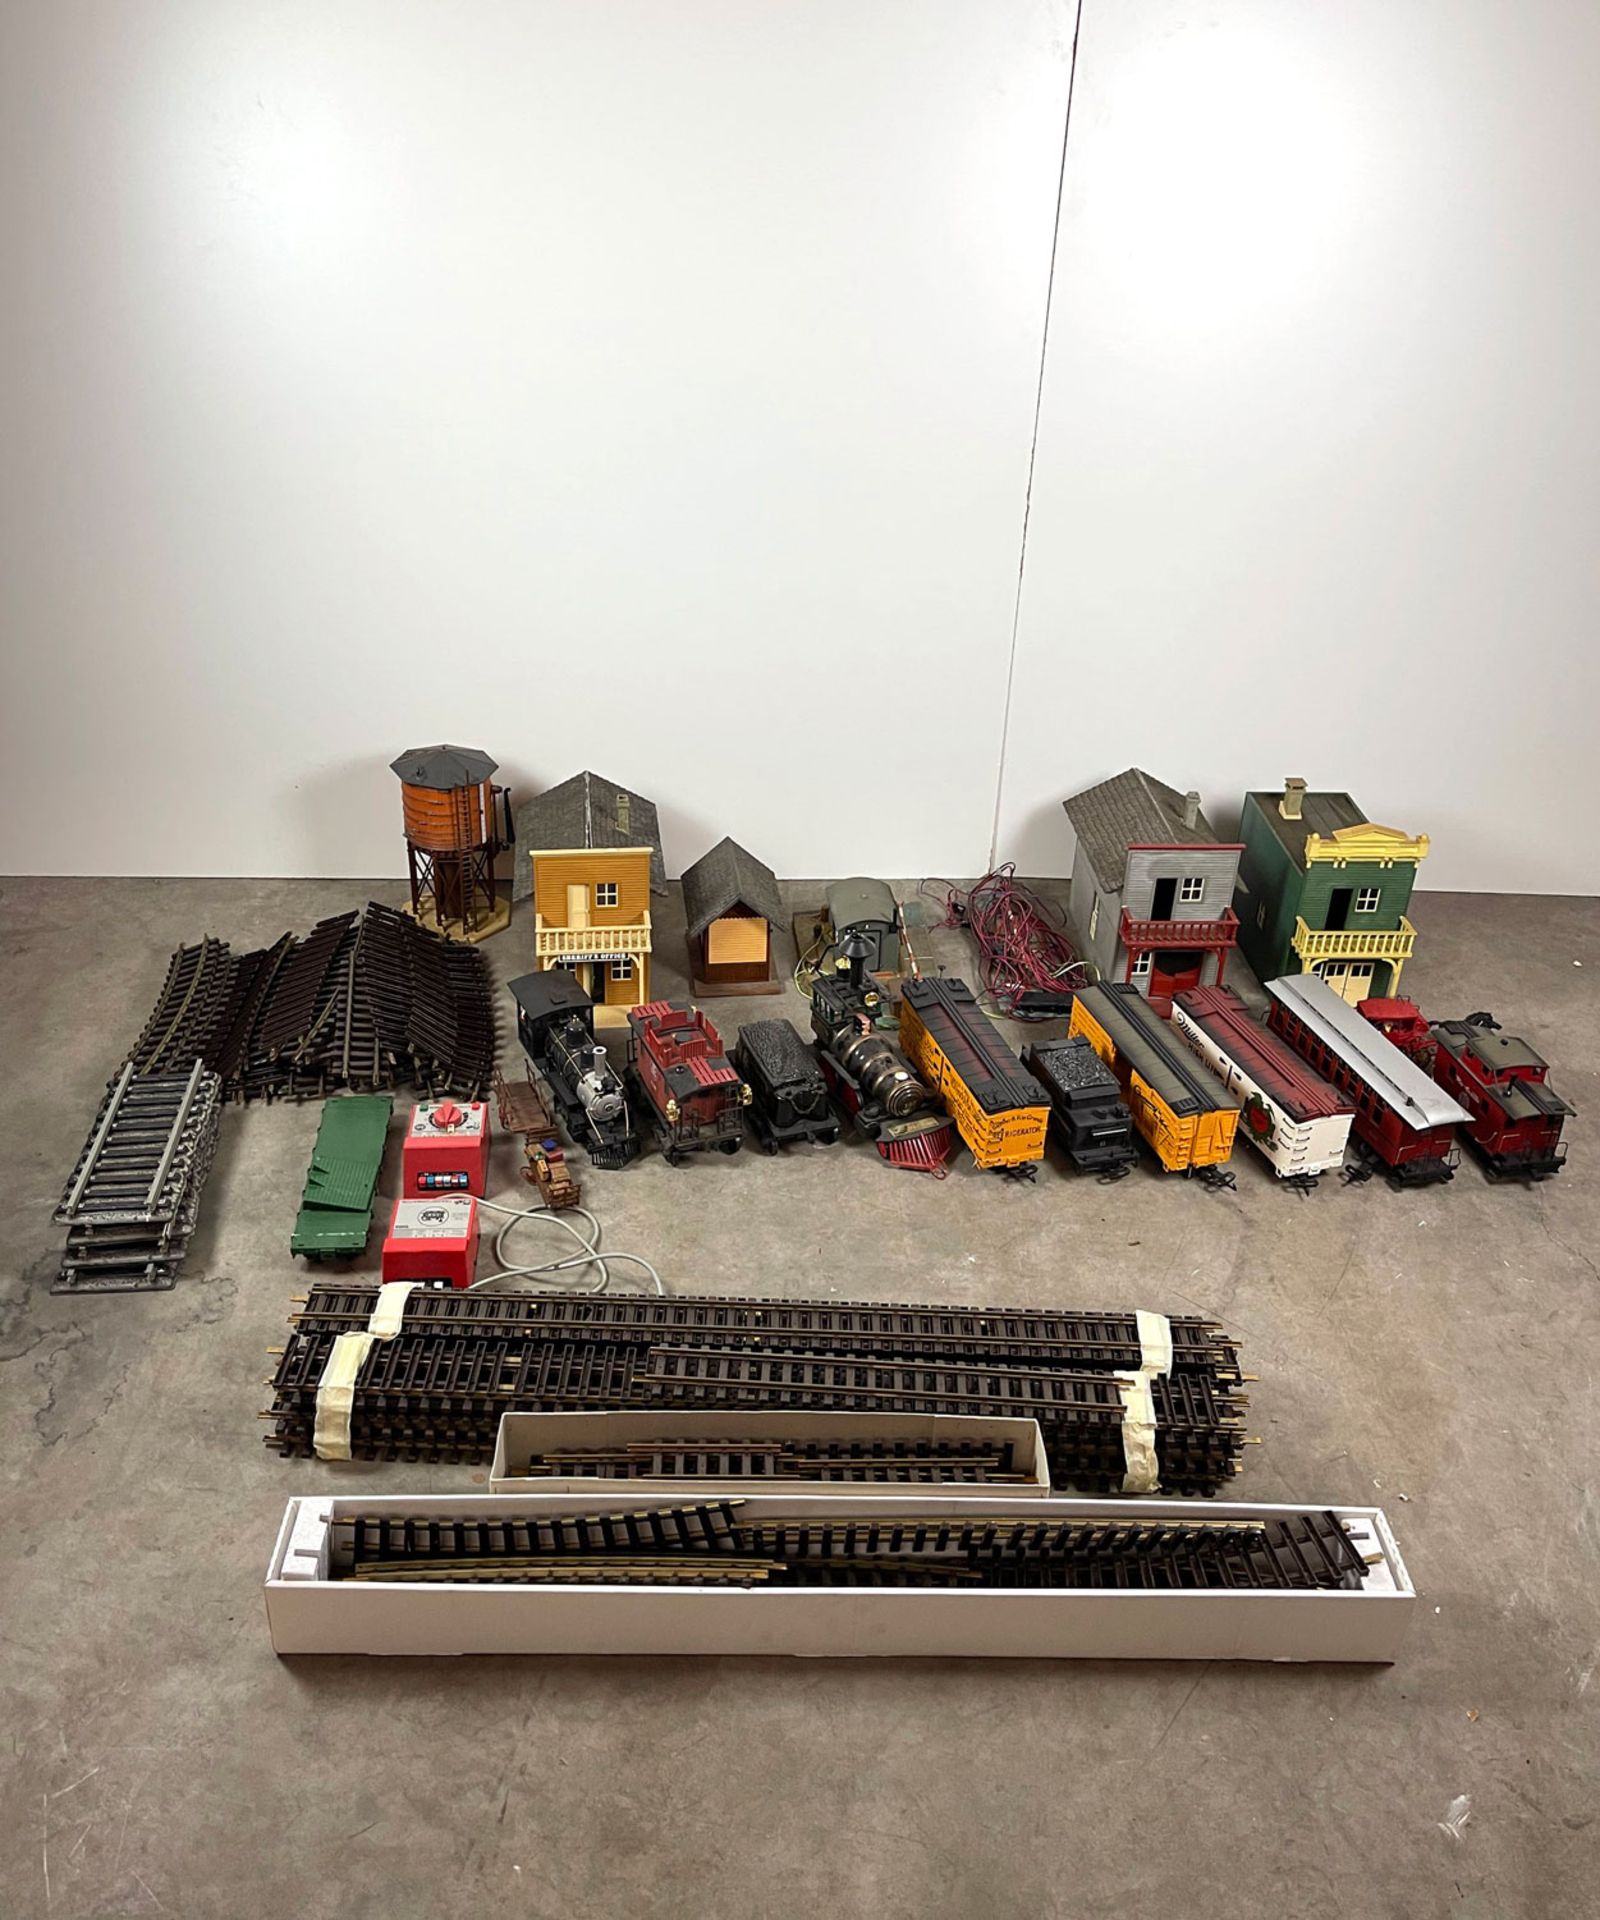 Lot of LGB (Lehmann Gross Bahn) Model Train Set Parts